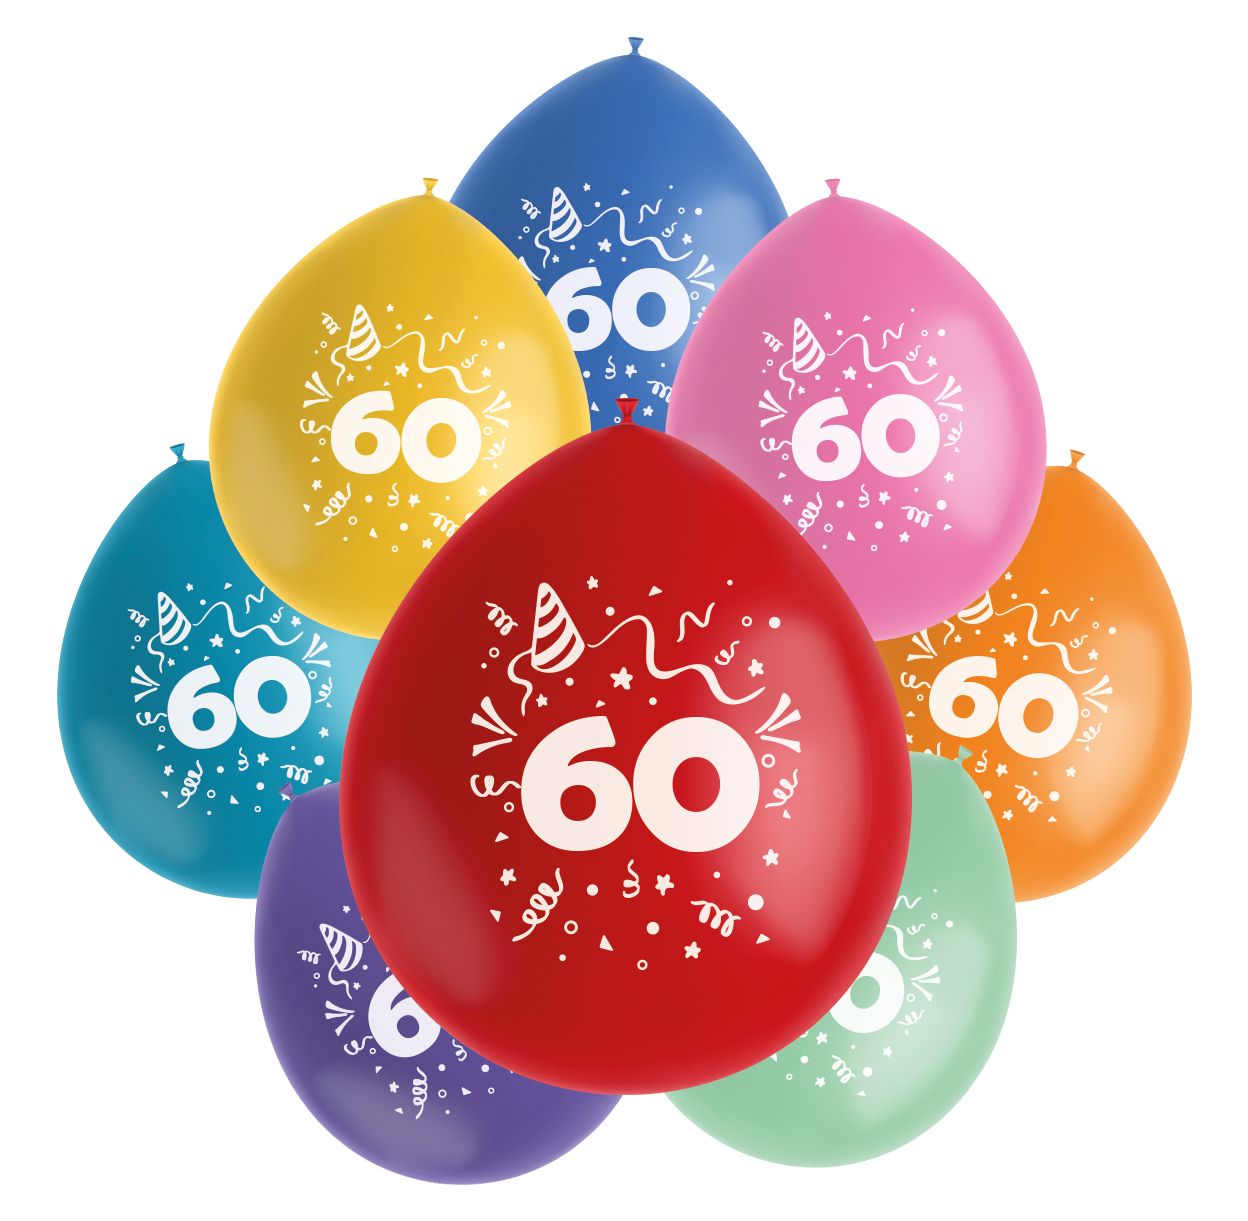 Color pop ballonnen set 60 jaar